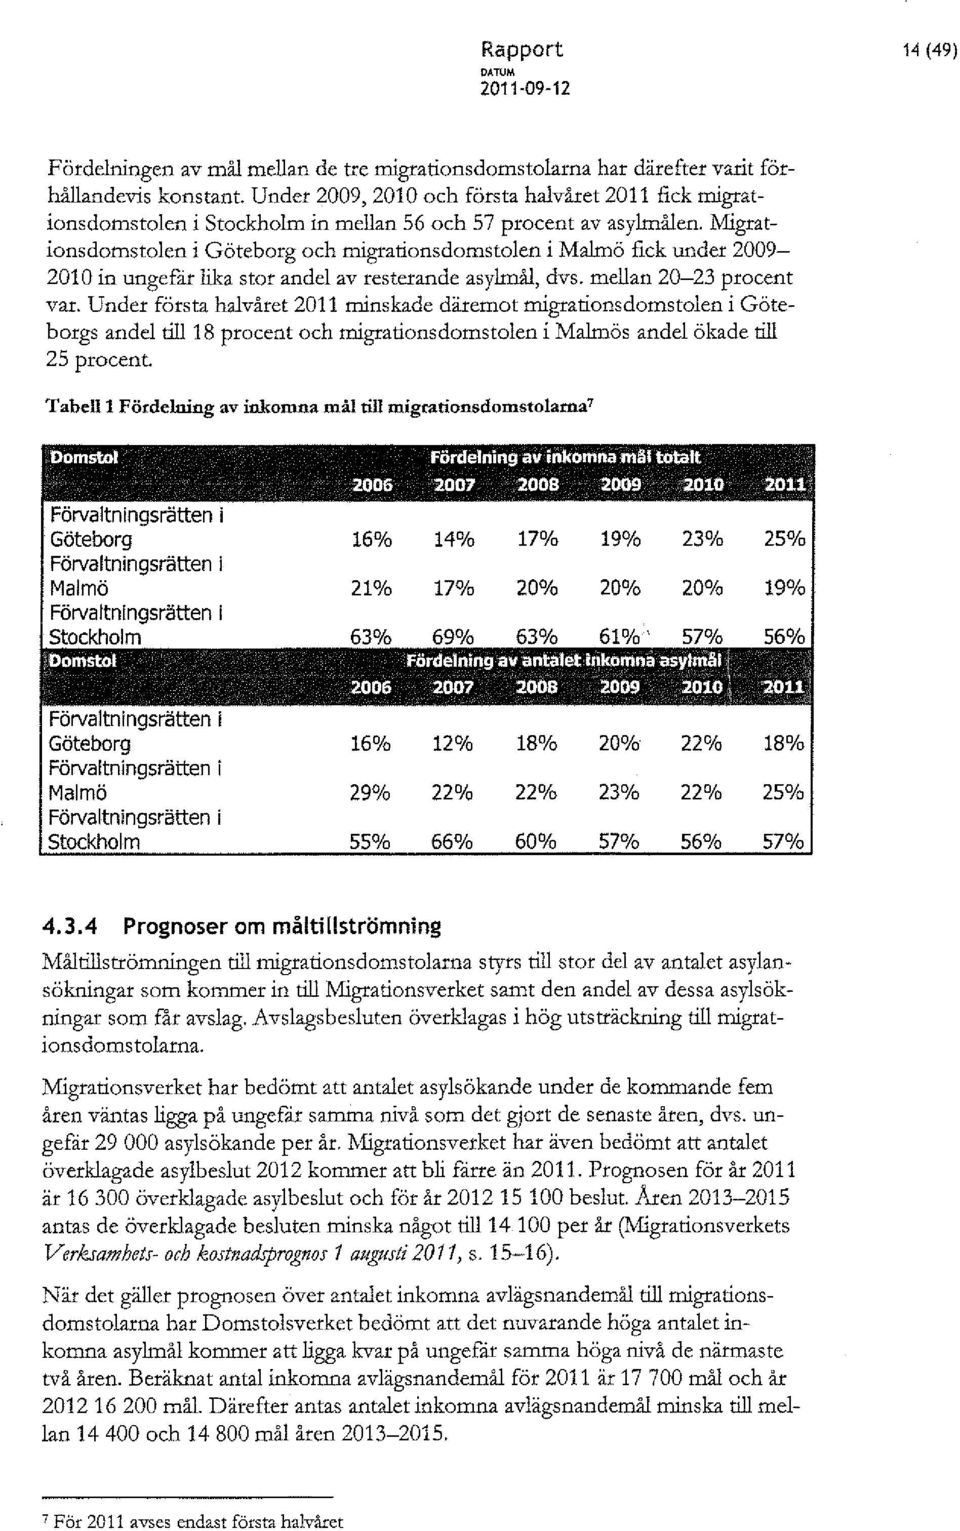 Migrationsdomstolen i Göteborg och migrationsdomstolen i Malmö fick under 2009-2010 in ungefit lika stor andel av resterande asylmål, dvs. mellan 20-23 procent var.